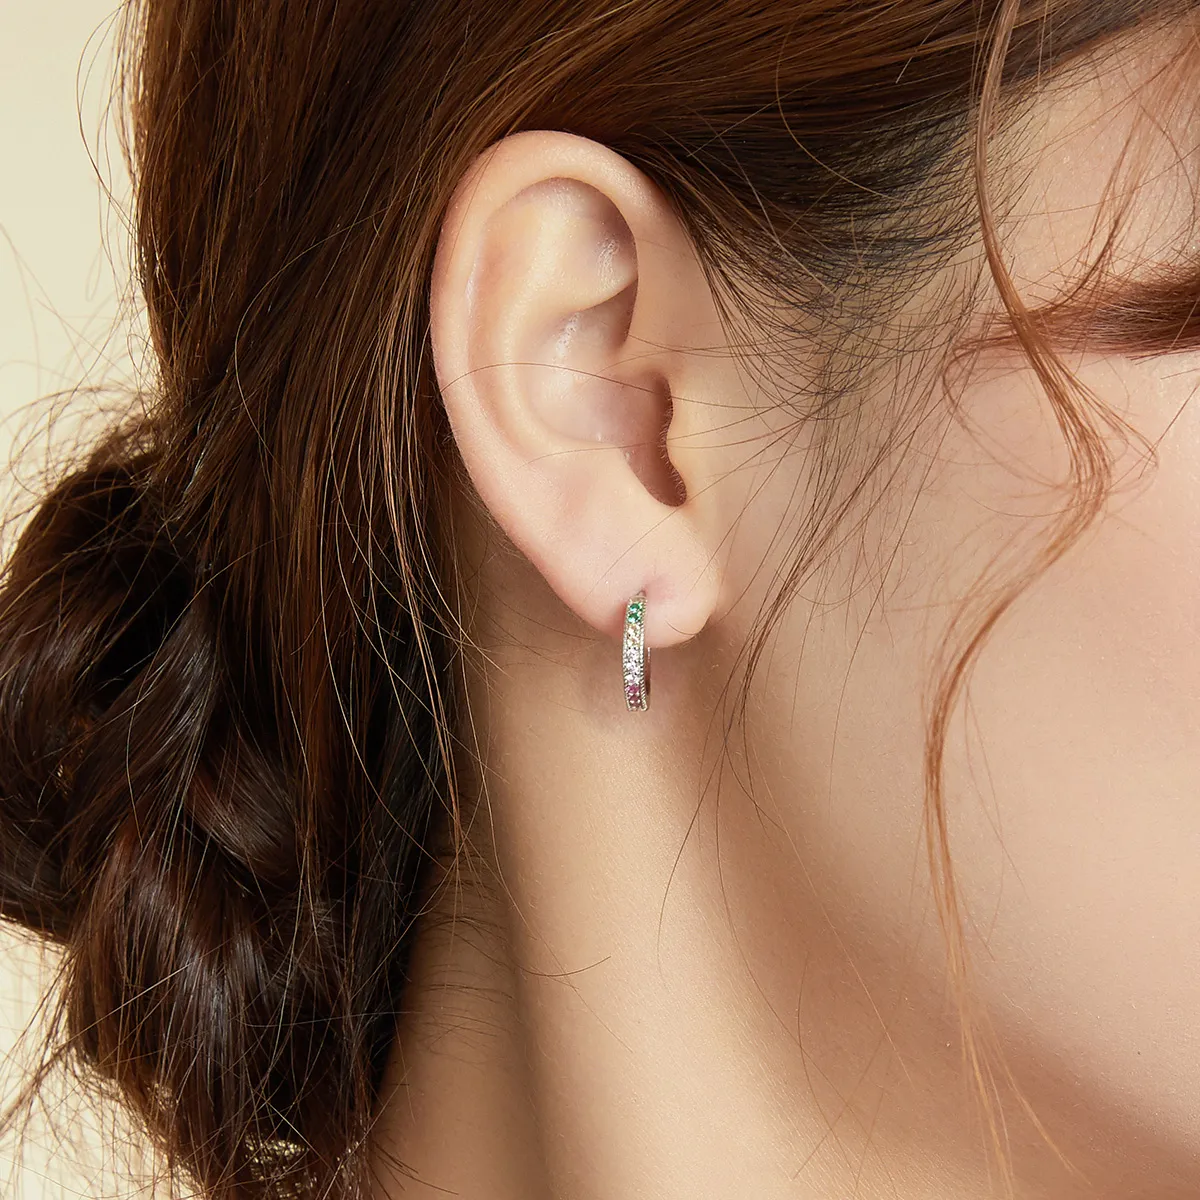 Pandora Style Colorful Hoop Earrings - BSE459